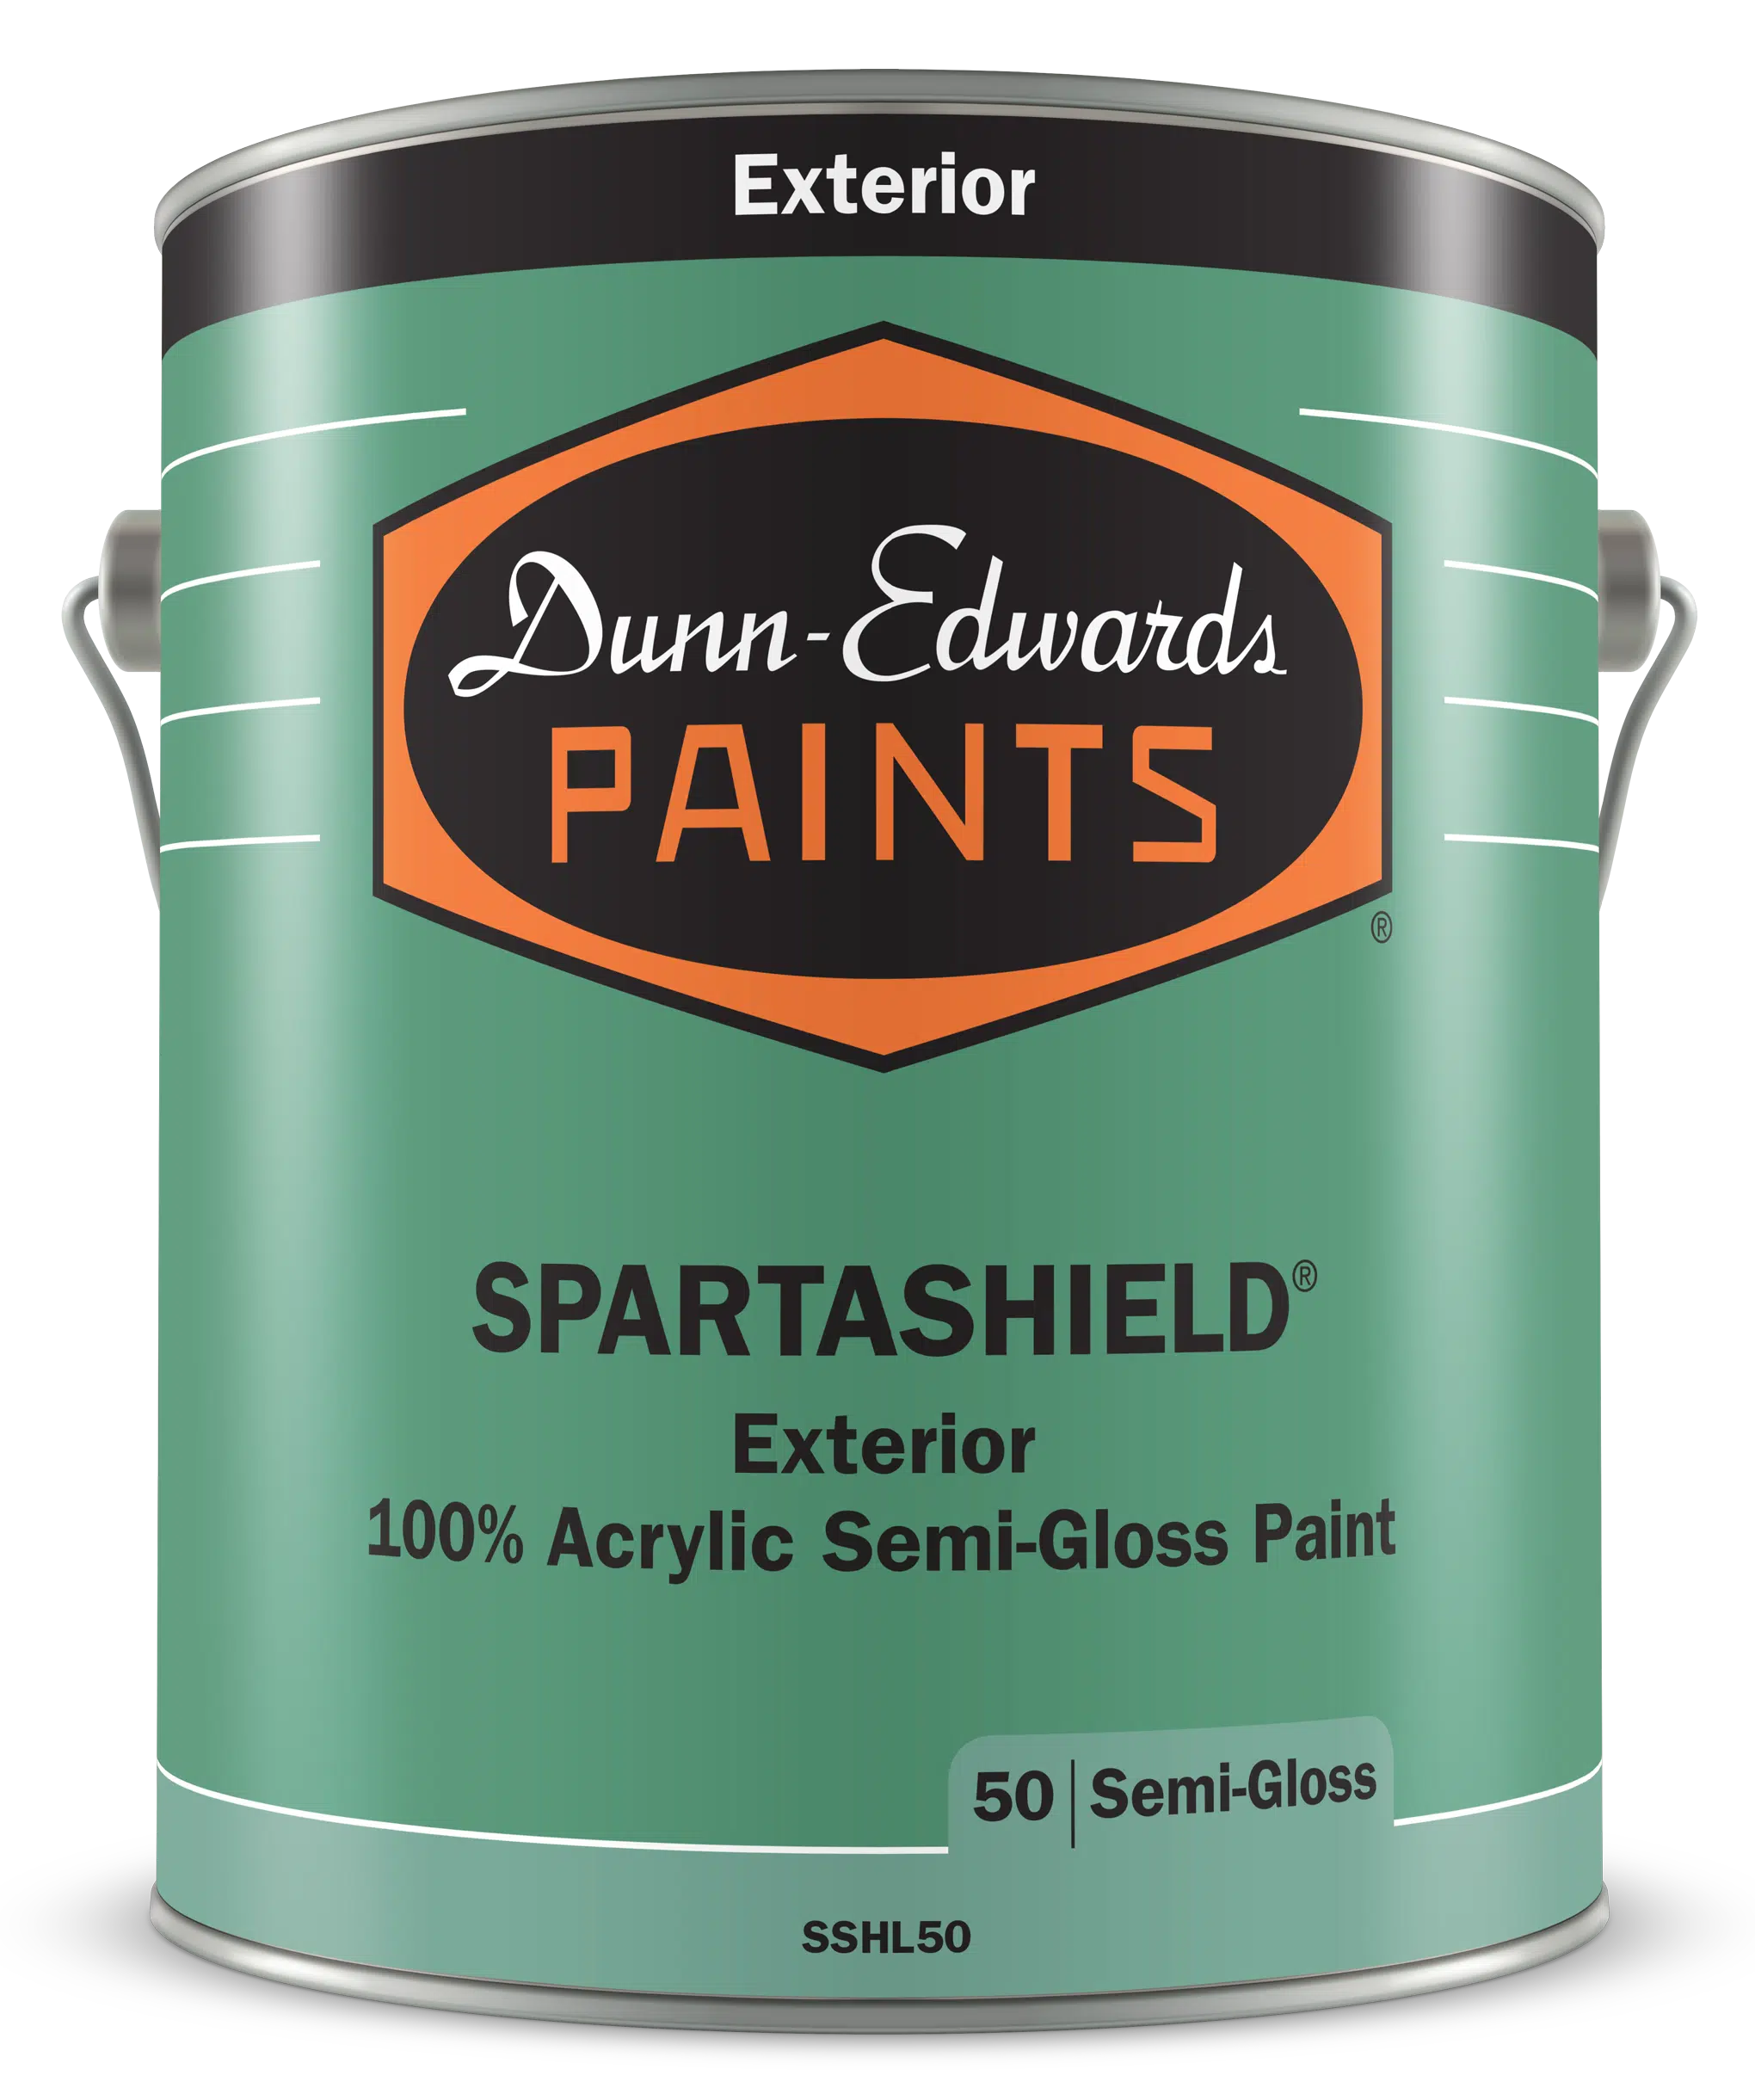 SPARTASHIELD Exterior 100% Acrylic Semi-Gloss Paint Can